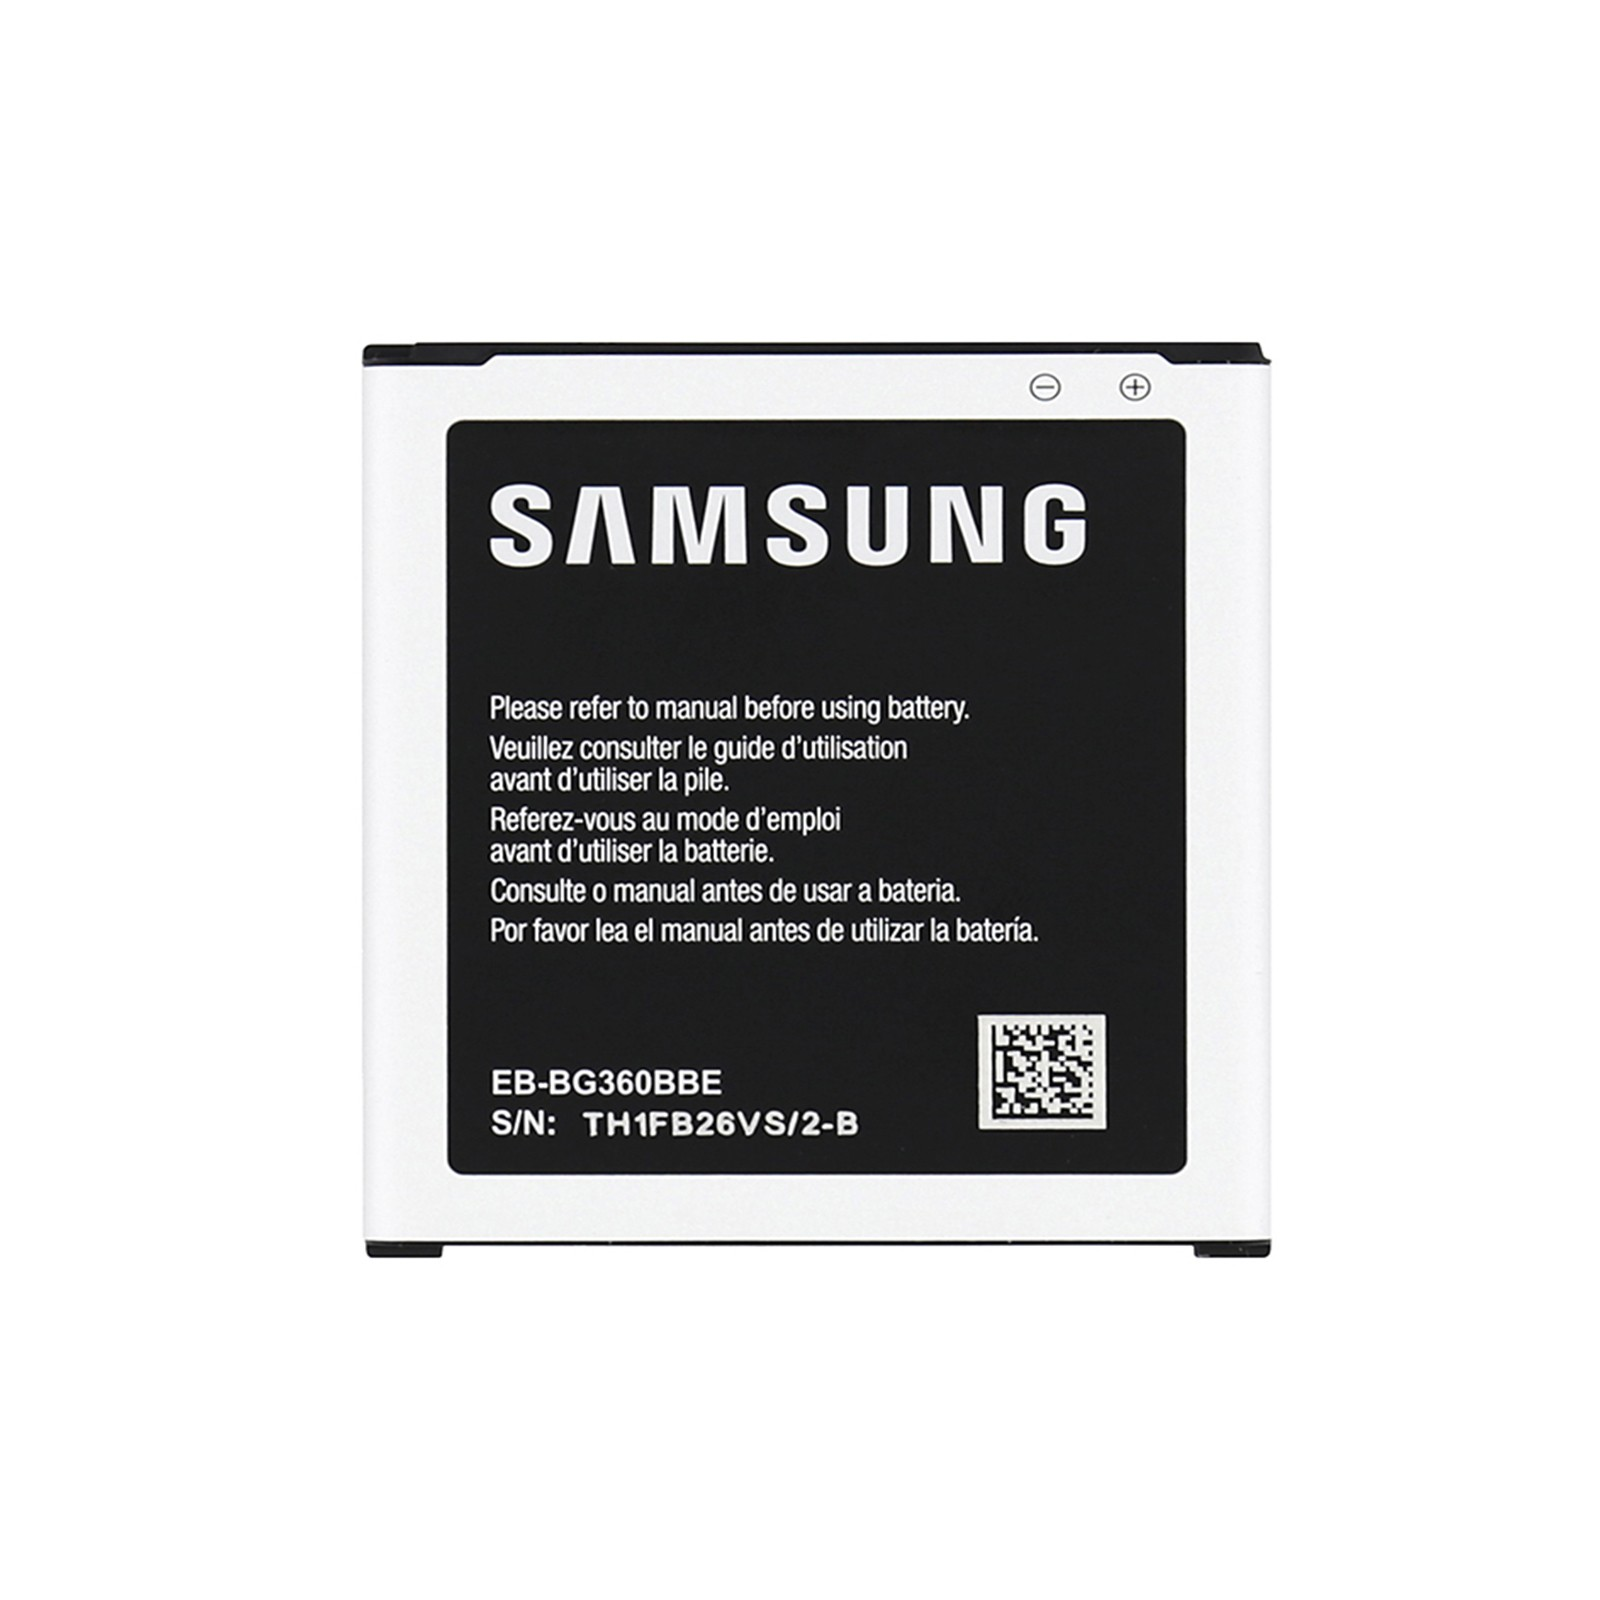 SAMSUNG Handy Akku Akkus Core 2000Mah G360 Eb-Bg360 Prime EB-BG360BBE Galaxy Original Samsung G361F